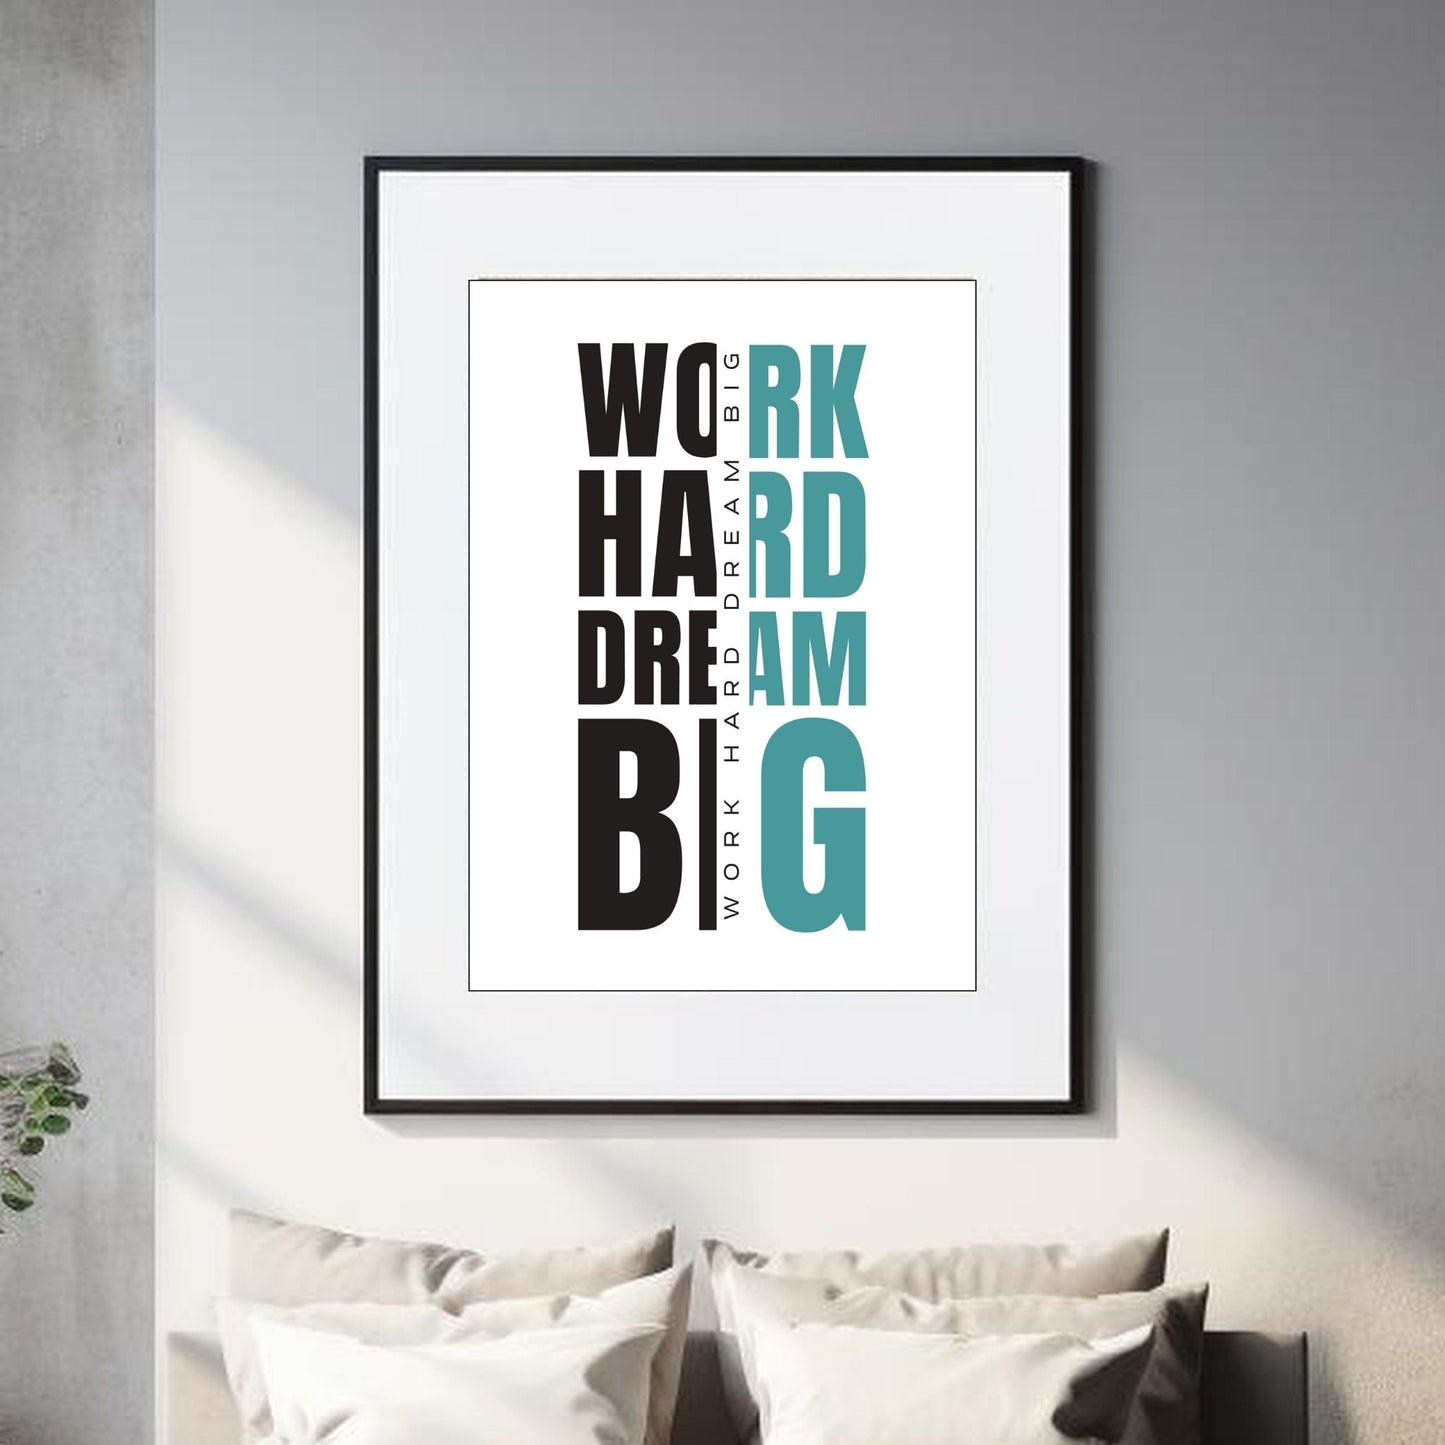 "work hard dream big" - tekstplakat med sort og grønn tekst, og hvit bakgrunn.  Illustrasjon viser plakat i sort ramme og hvit passepartout.